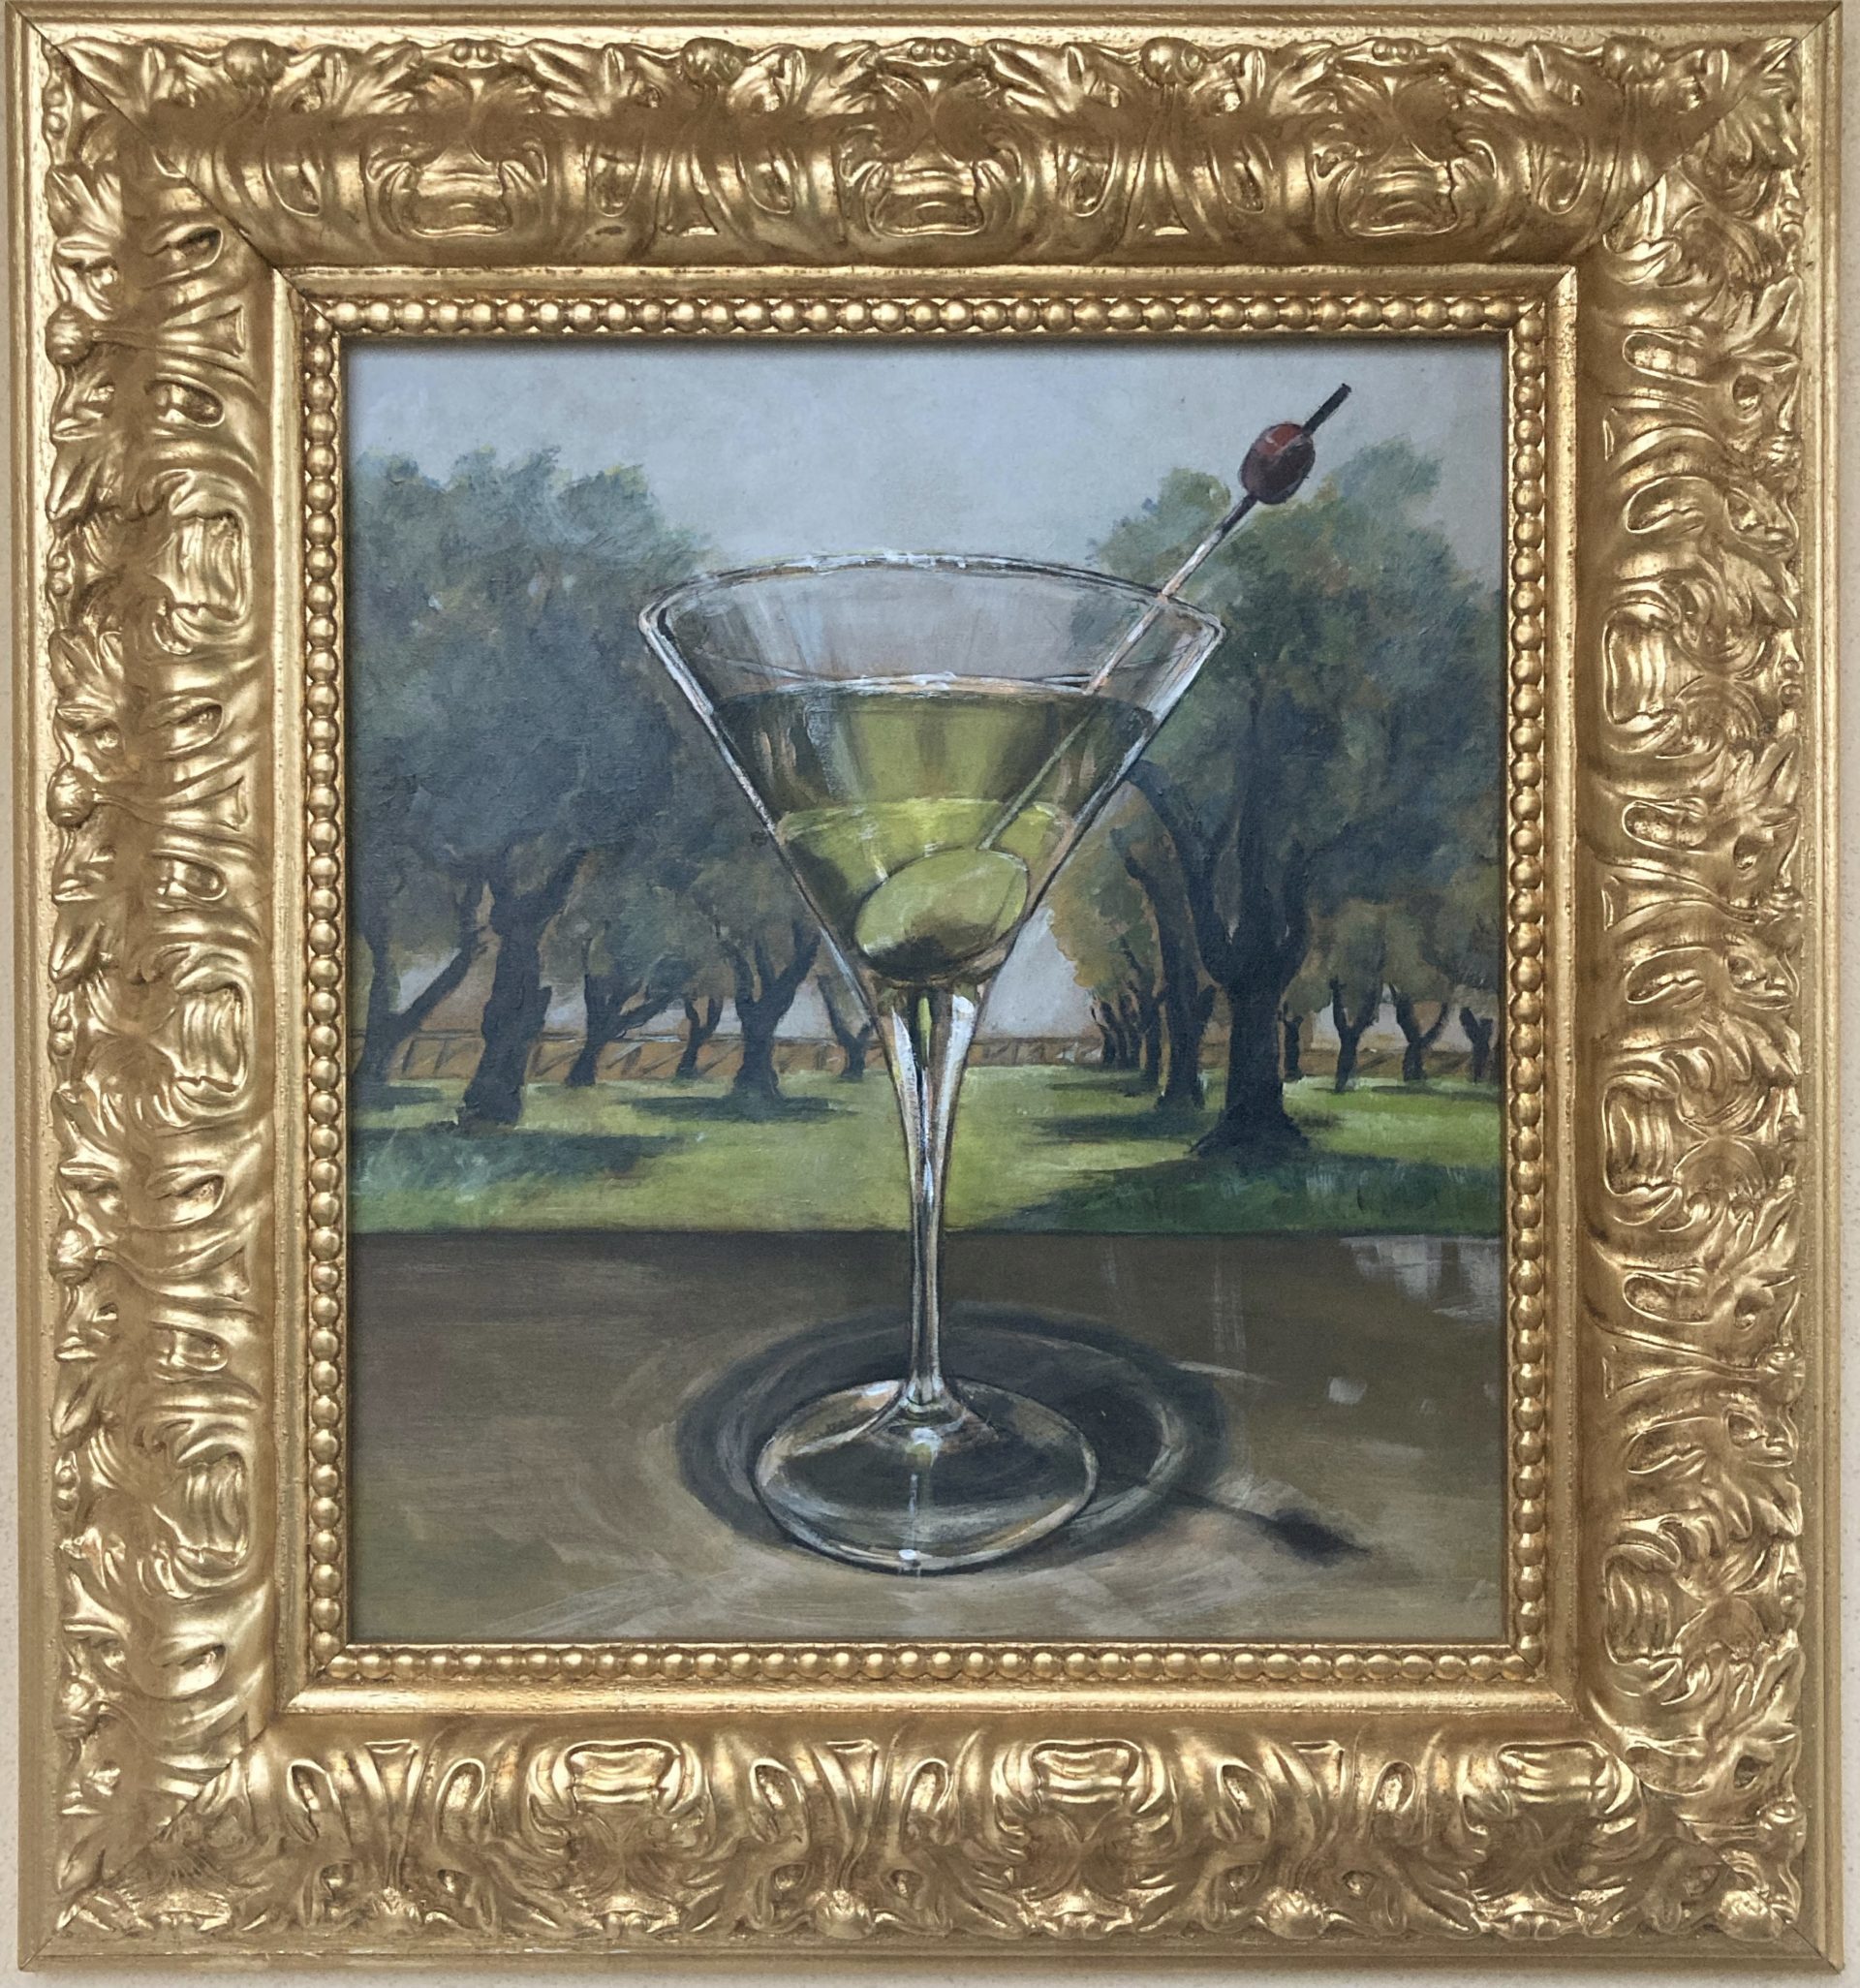 dipinto acrilico che raffigura la famosa coppa martini colma di olio d'oliva, un omaggio al famoso olio lucchese, il dipinto è collocato in una villa di rappresentanza di una nota azienda olearia